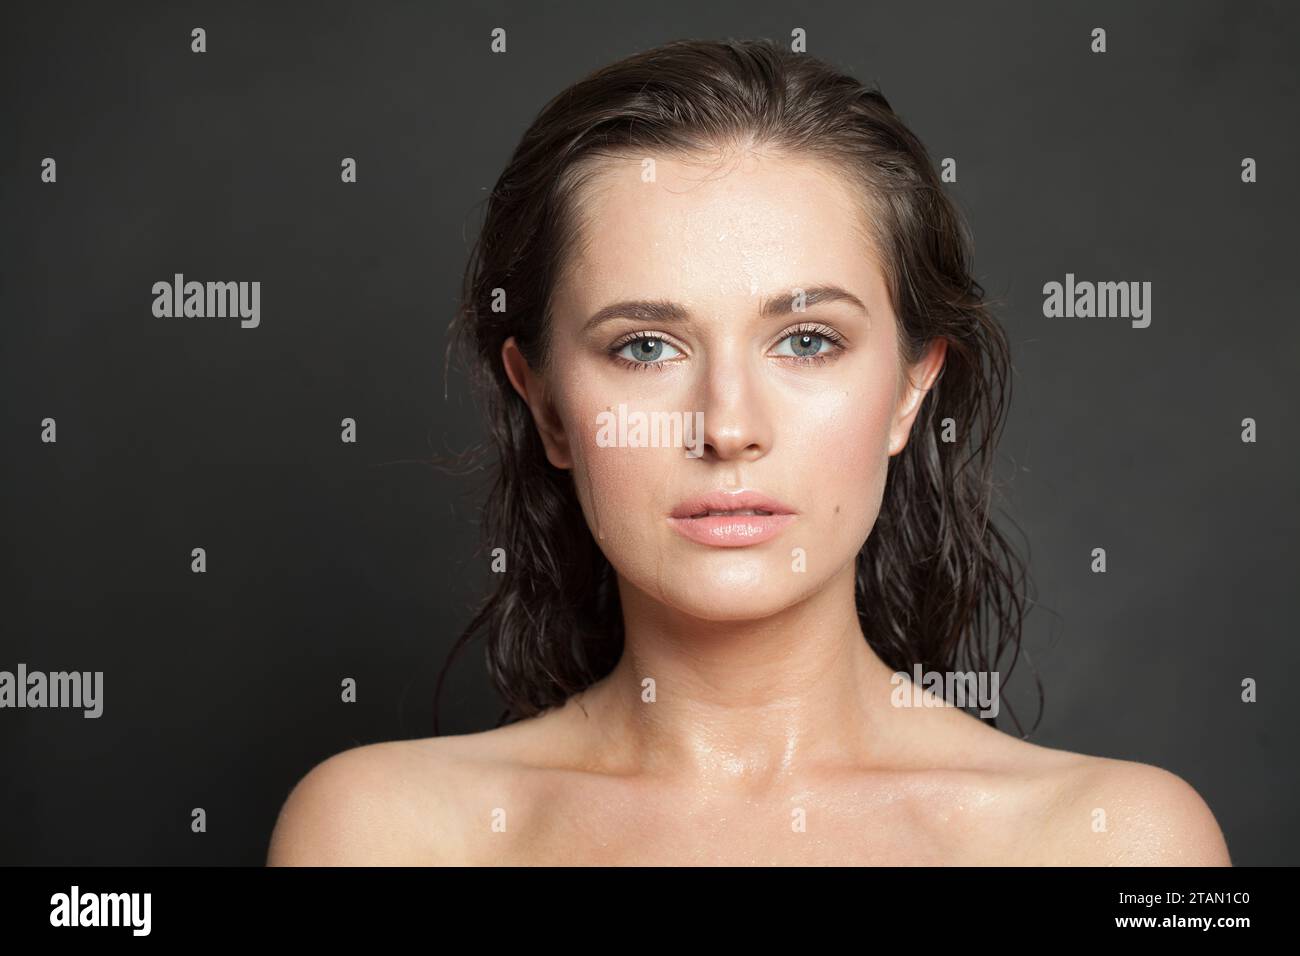 Schönes weibliches Modell mit gesunder frischer nasser Haut und dunklem Haar in die Kamera schauen, Mode Schönheit Porträt Stockfoto